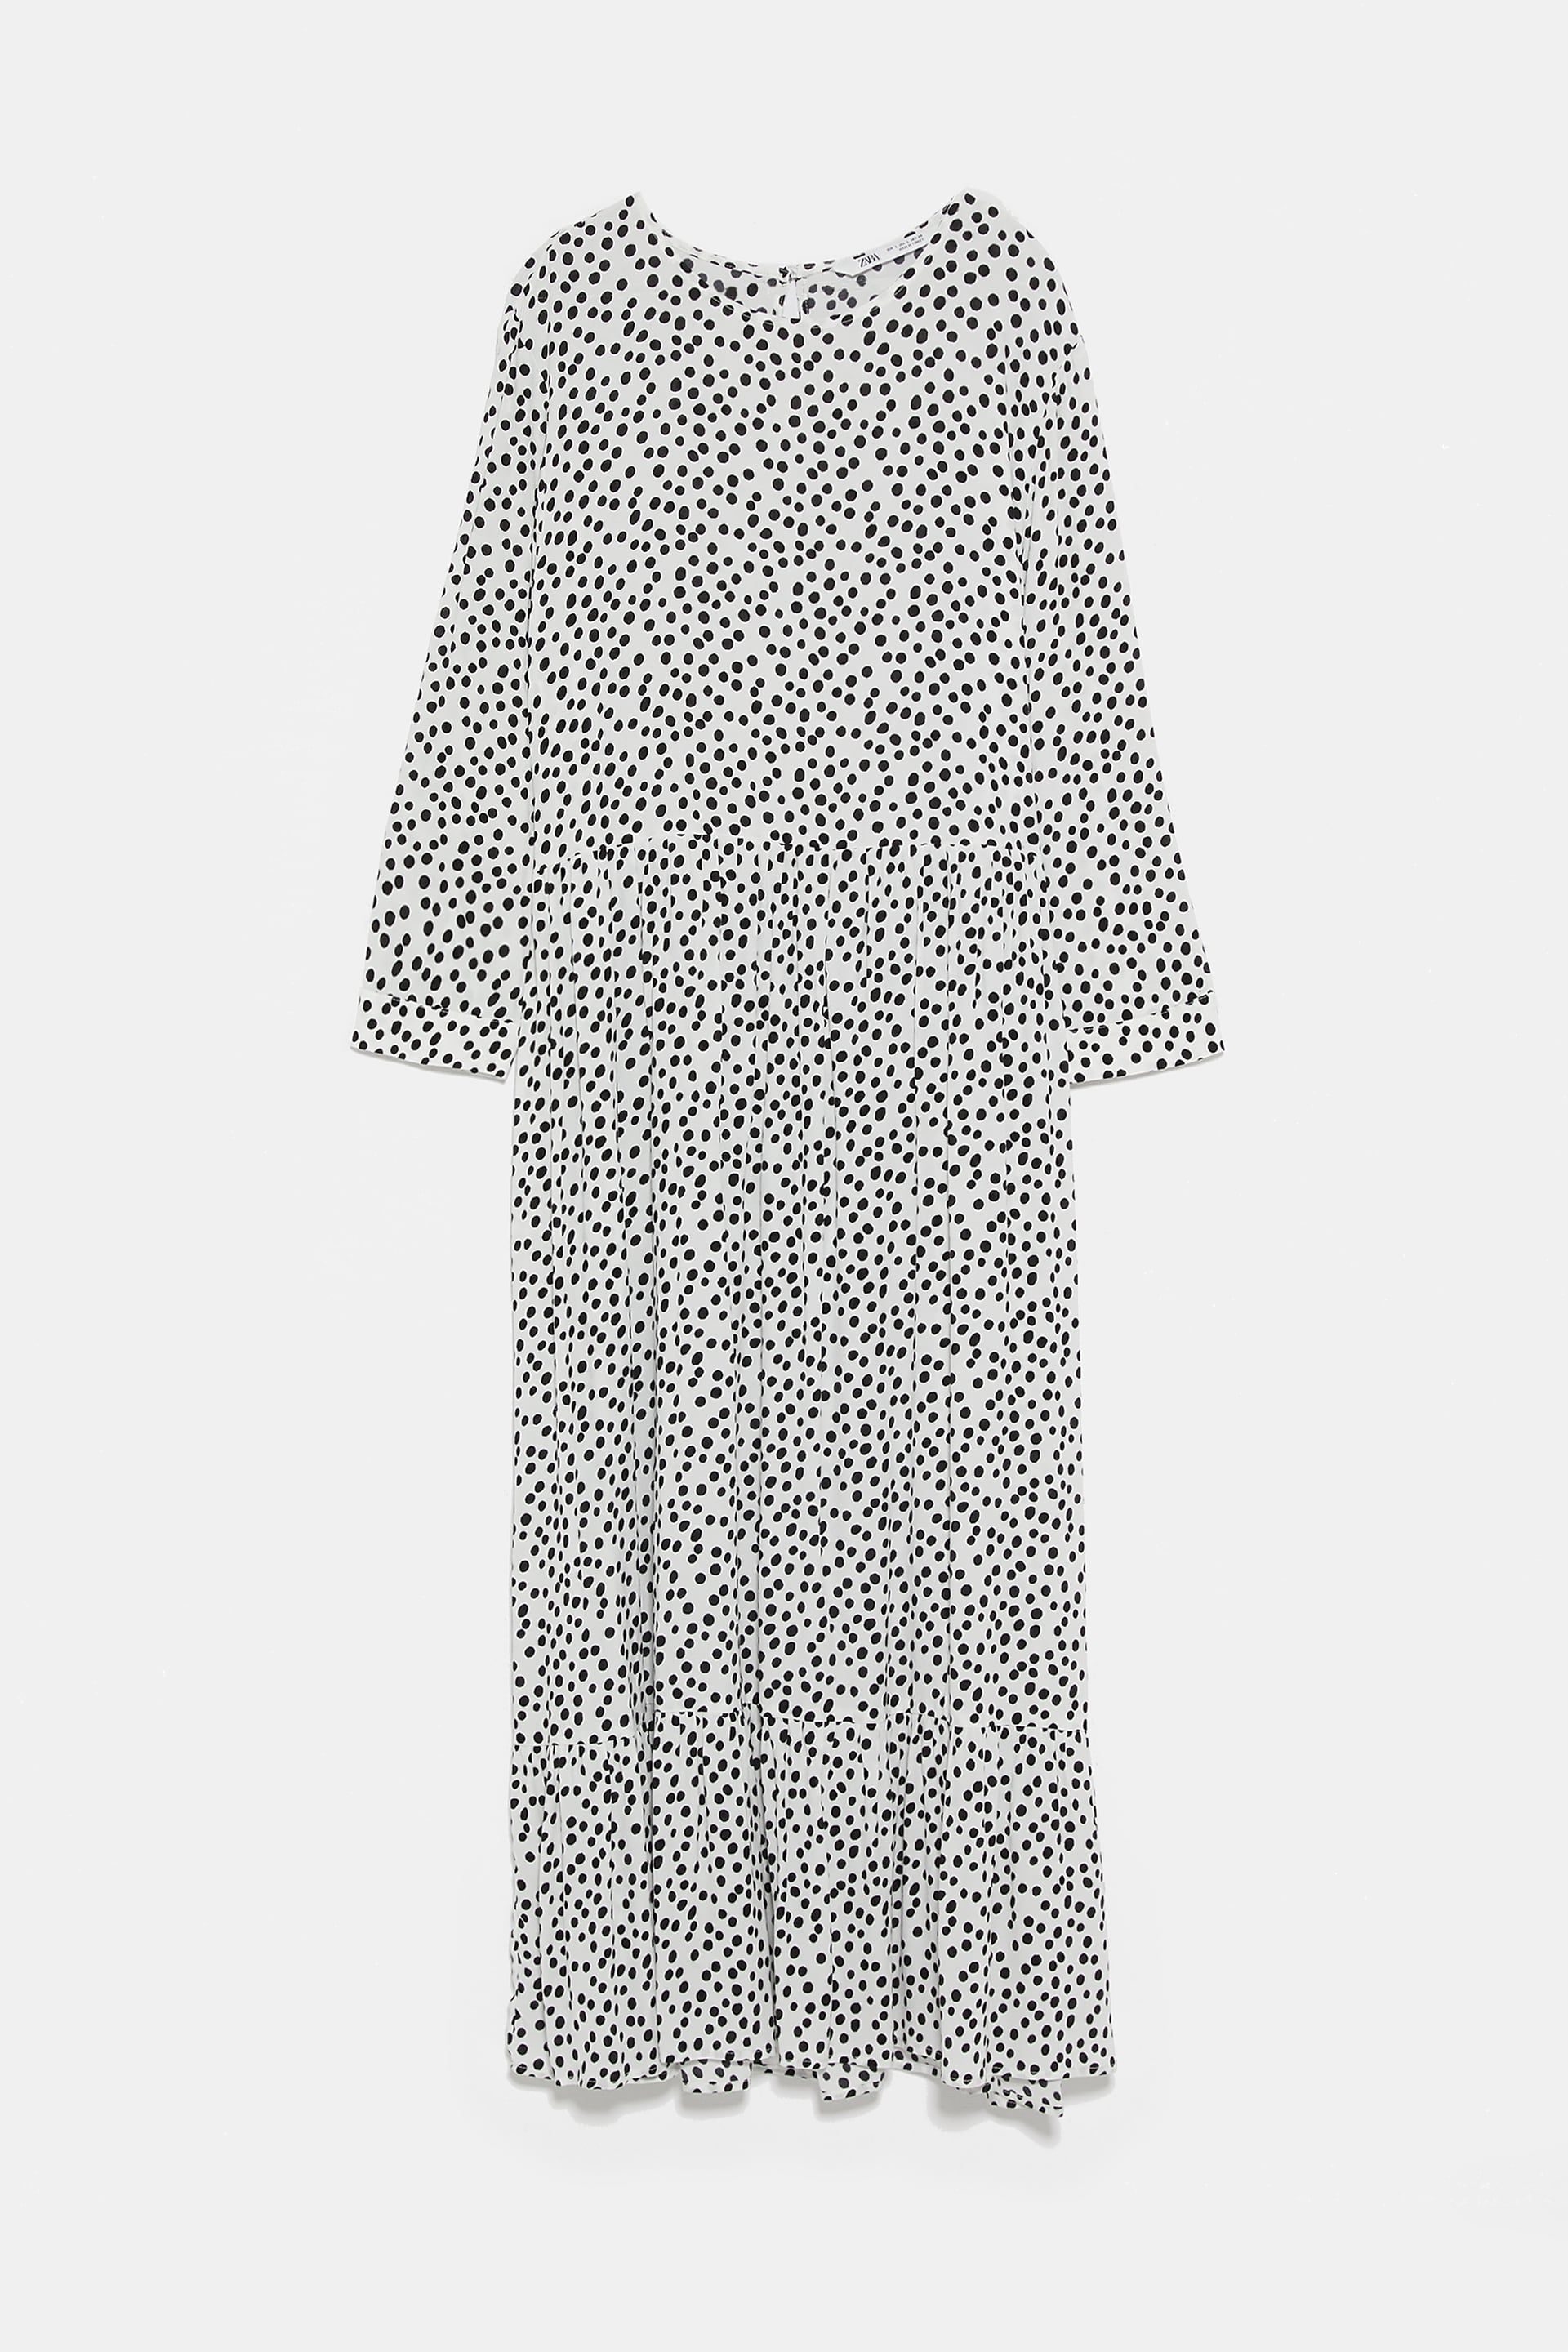 Zara's £39.99 polka dot maxi dress has 